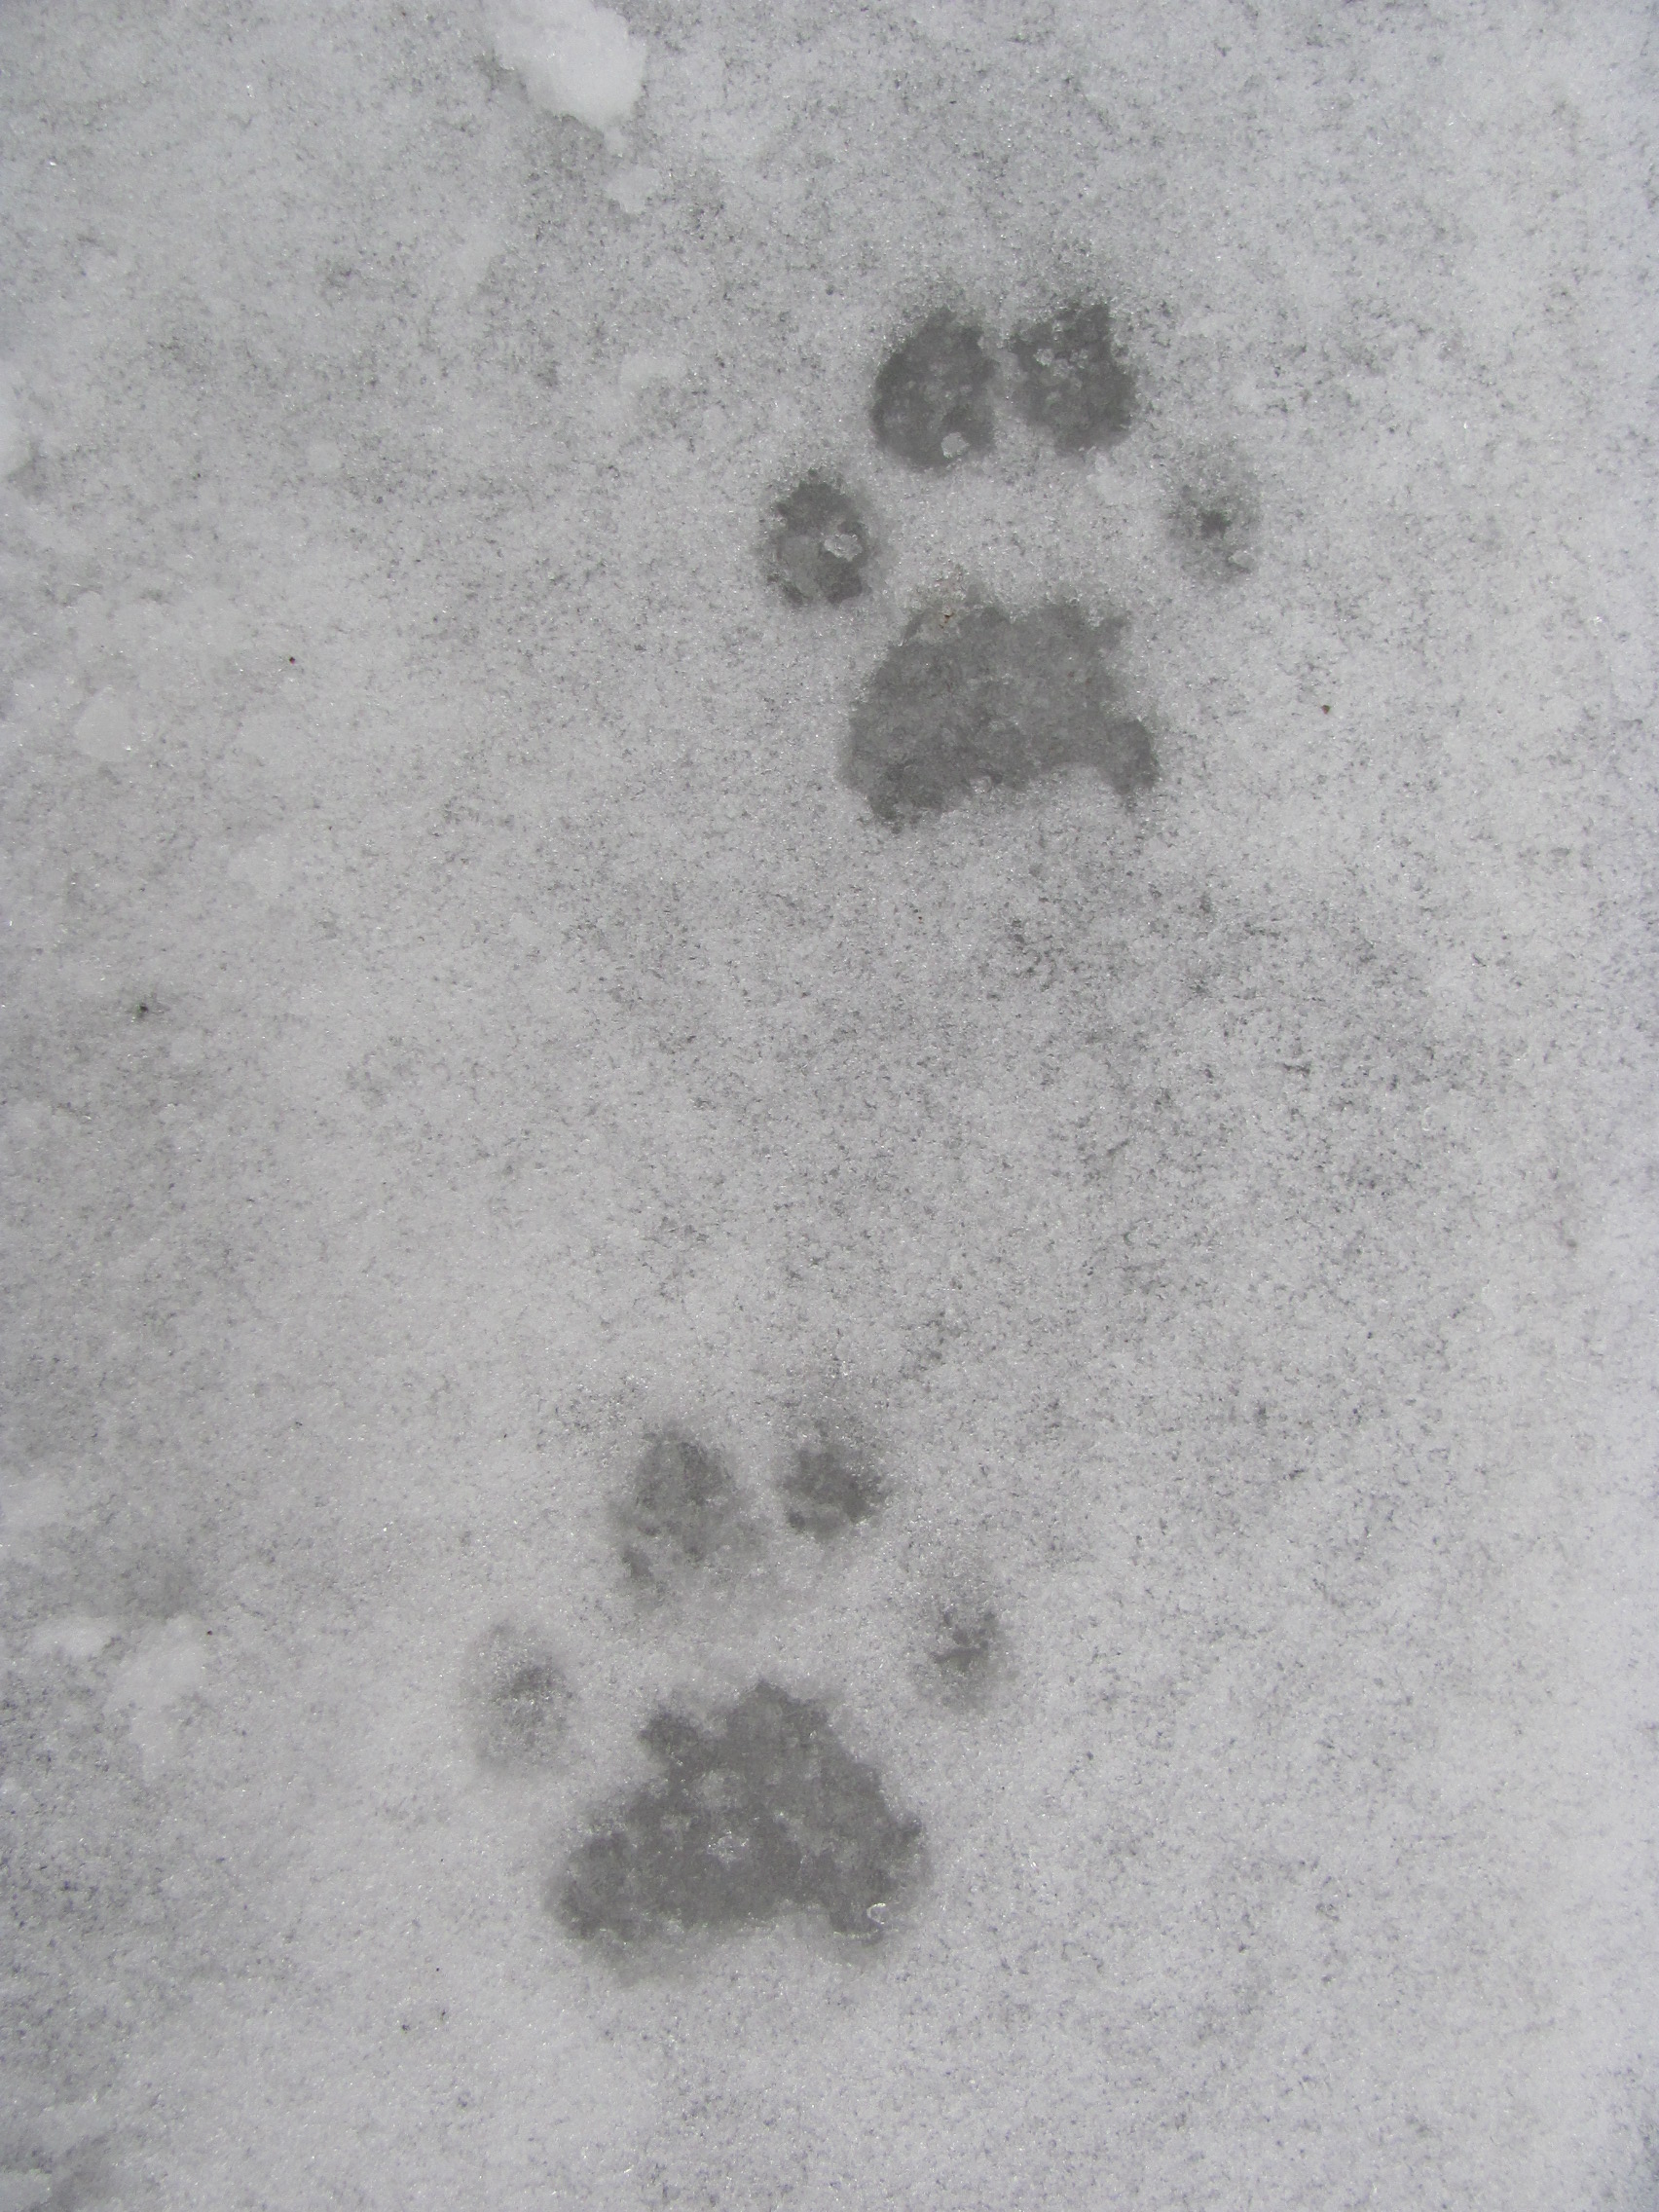 12_Čerstvé stopy rysa ostrovida v tajícím sněhu, autor_Petr Konupka